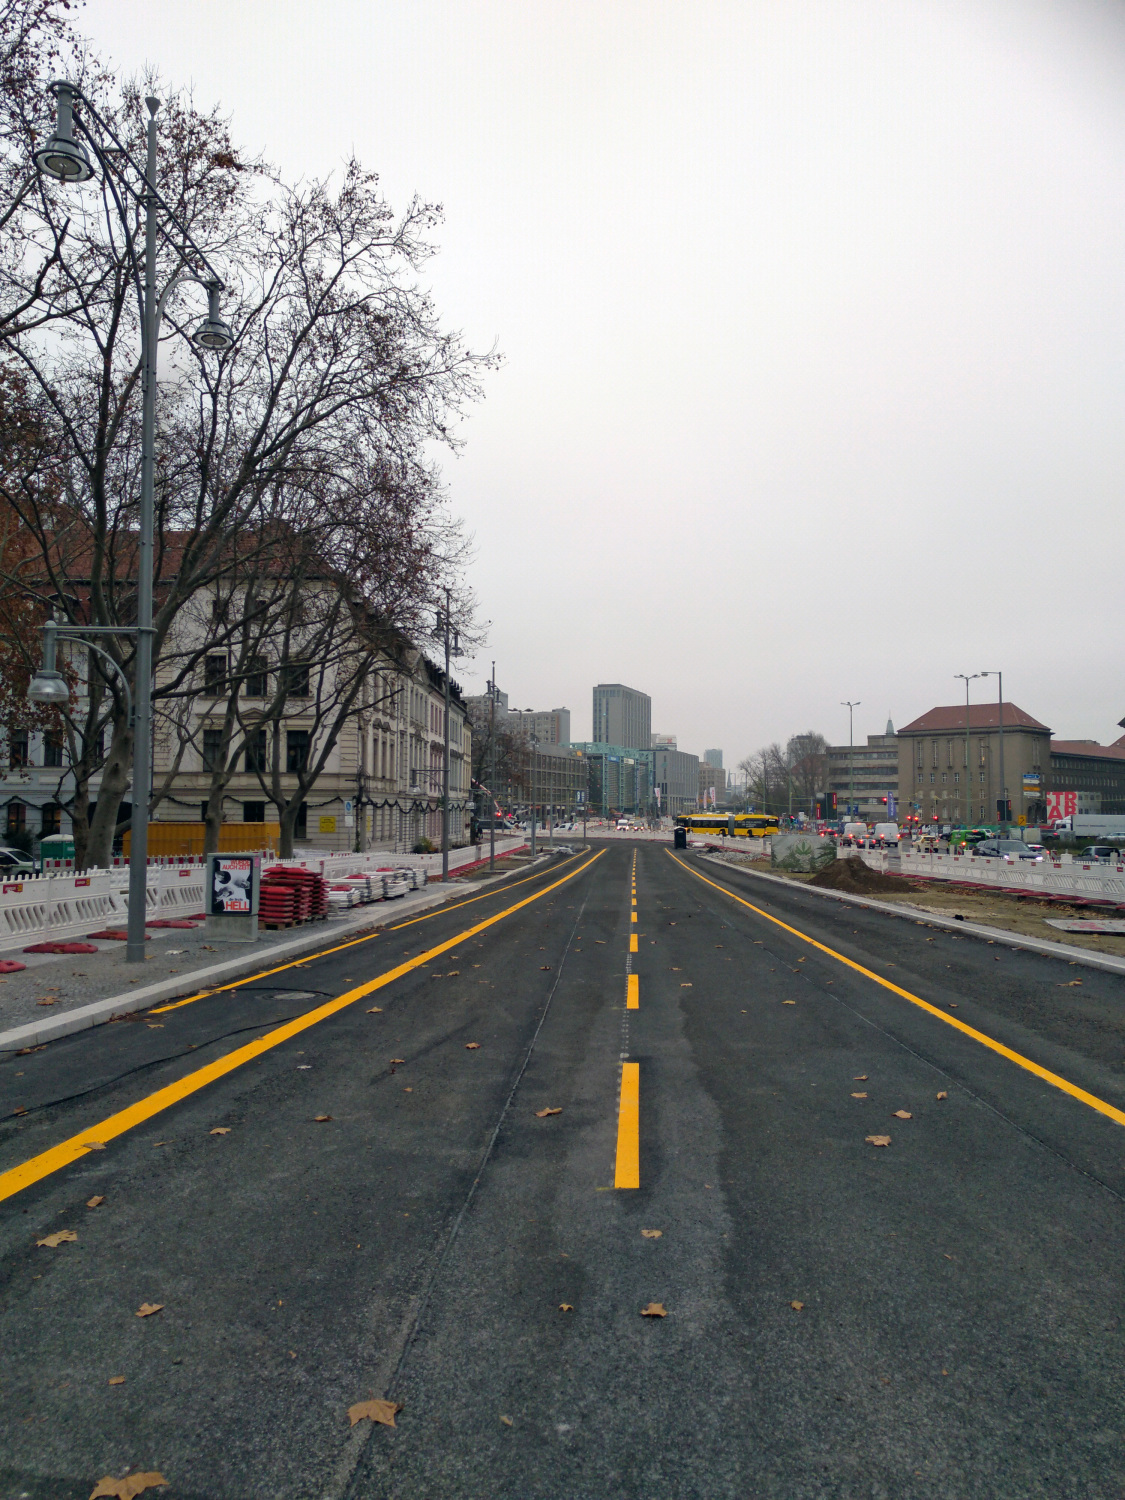 eine große, breite Straße mit gelben Fahrbahnmarkierungen rechts und links. 